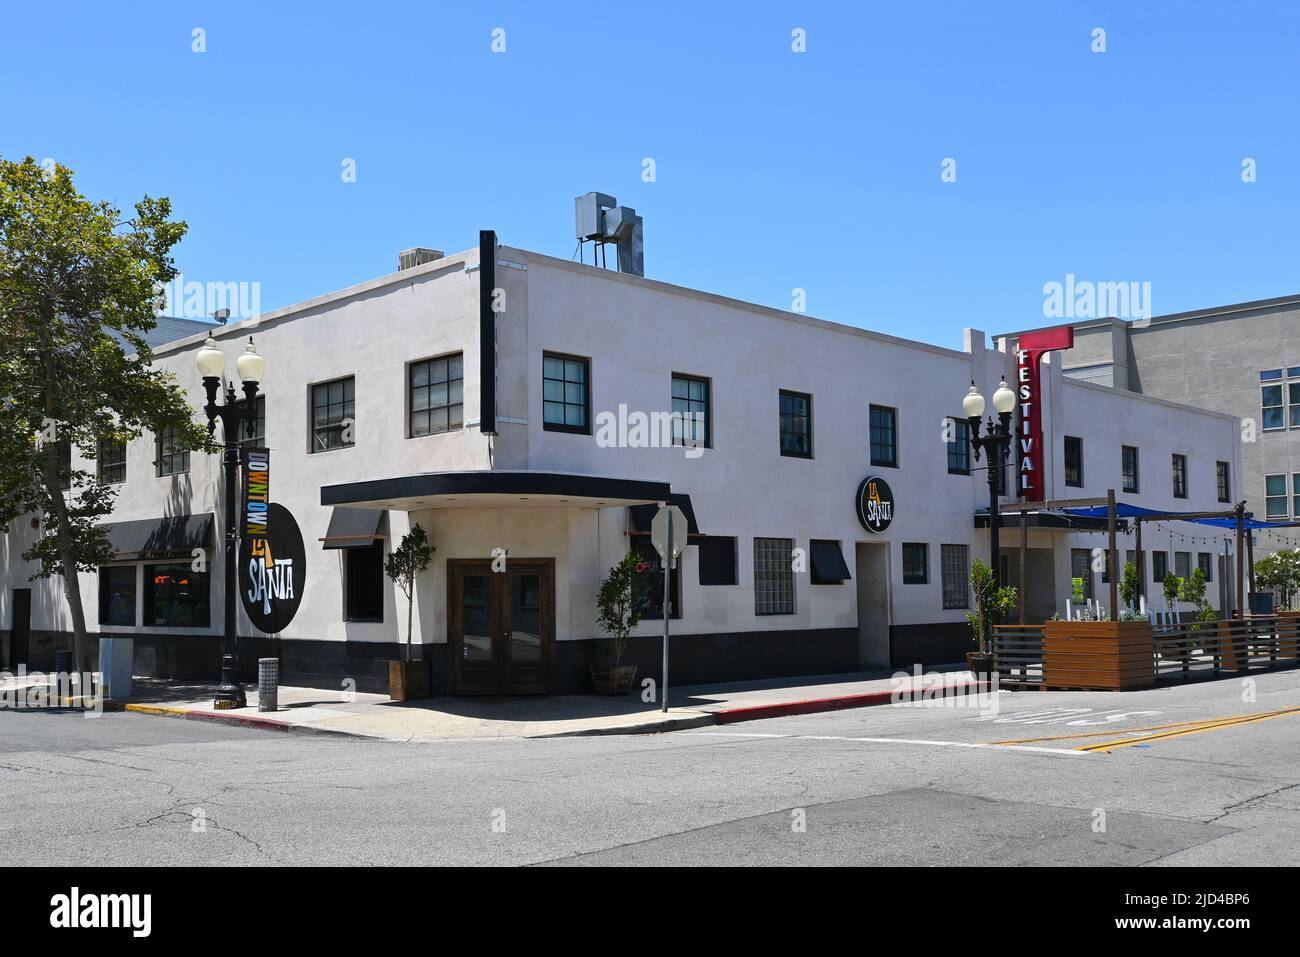 SANTA ANA, CALIFORNIE - 17 JUIN 2022: La Santa une salle de concert intime, avec bar et restaurant, dans le quartier historique du centre-ville. Banque D'Images